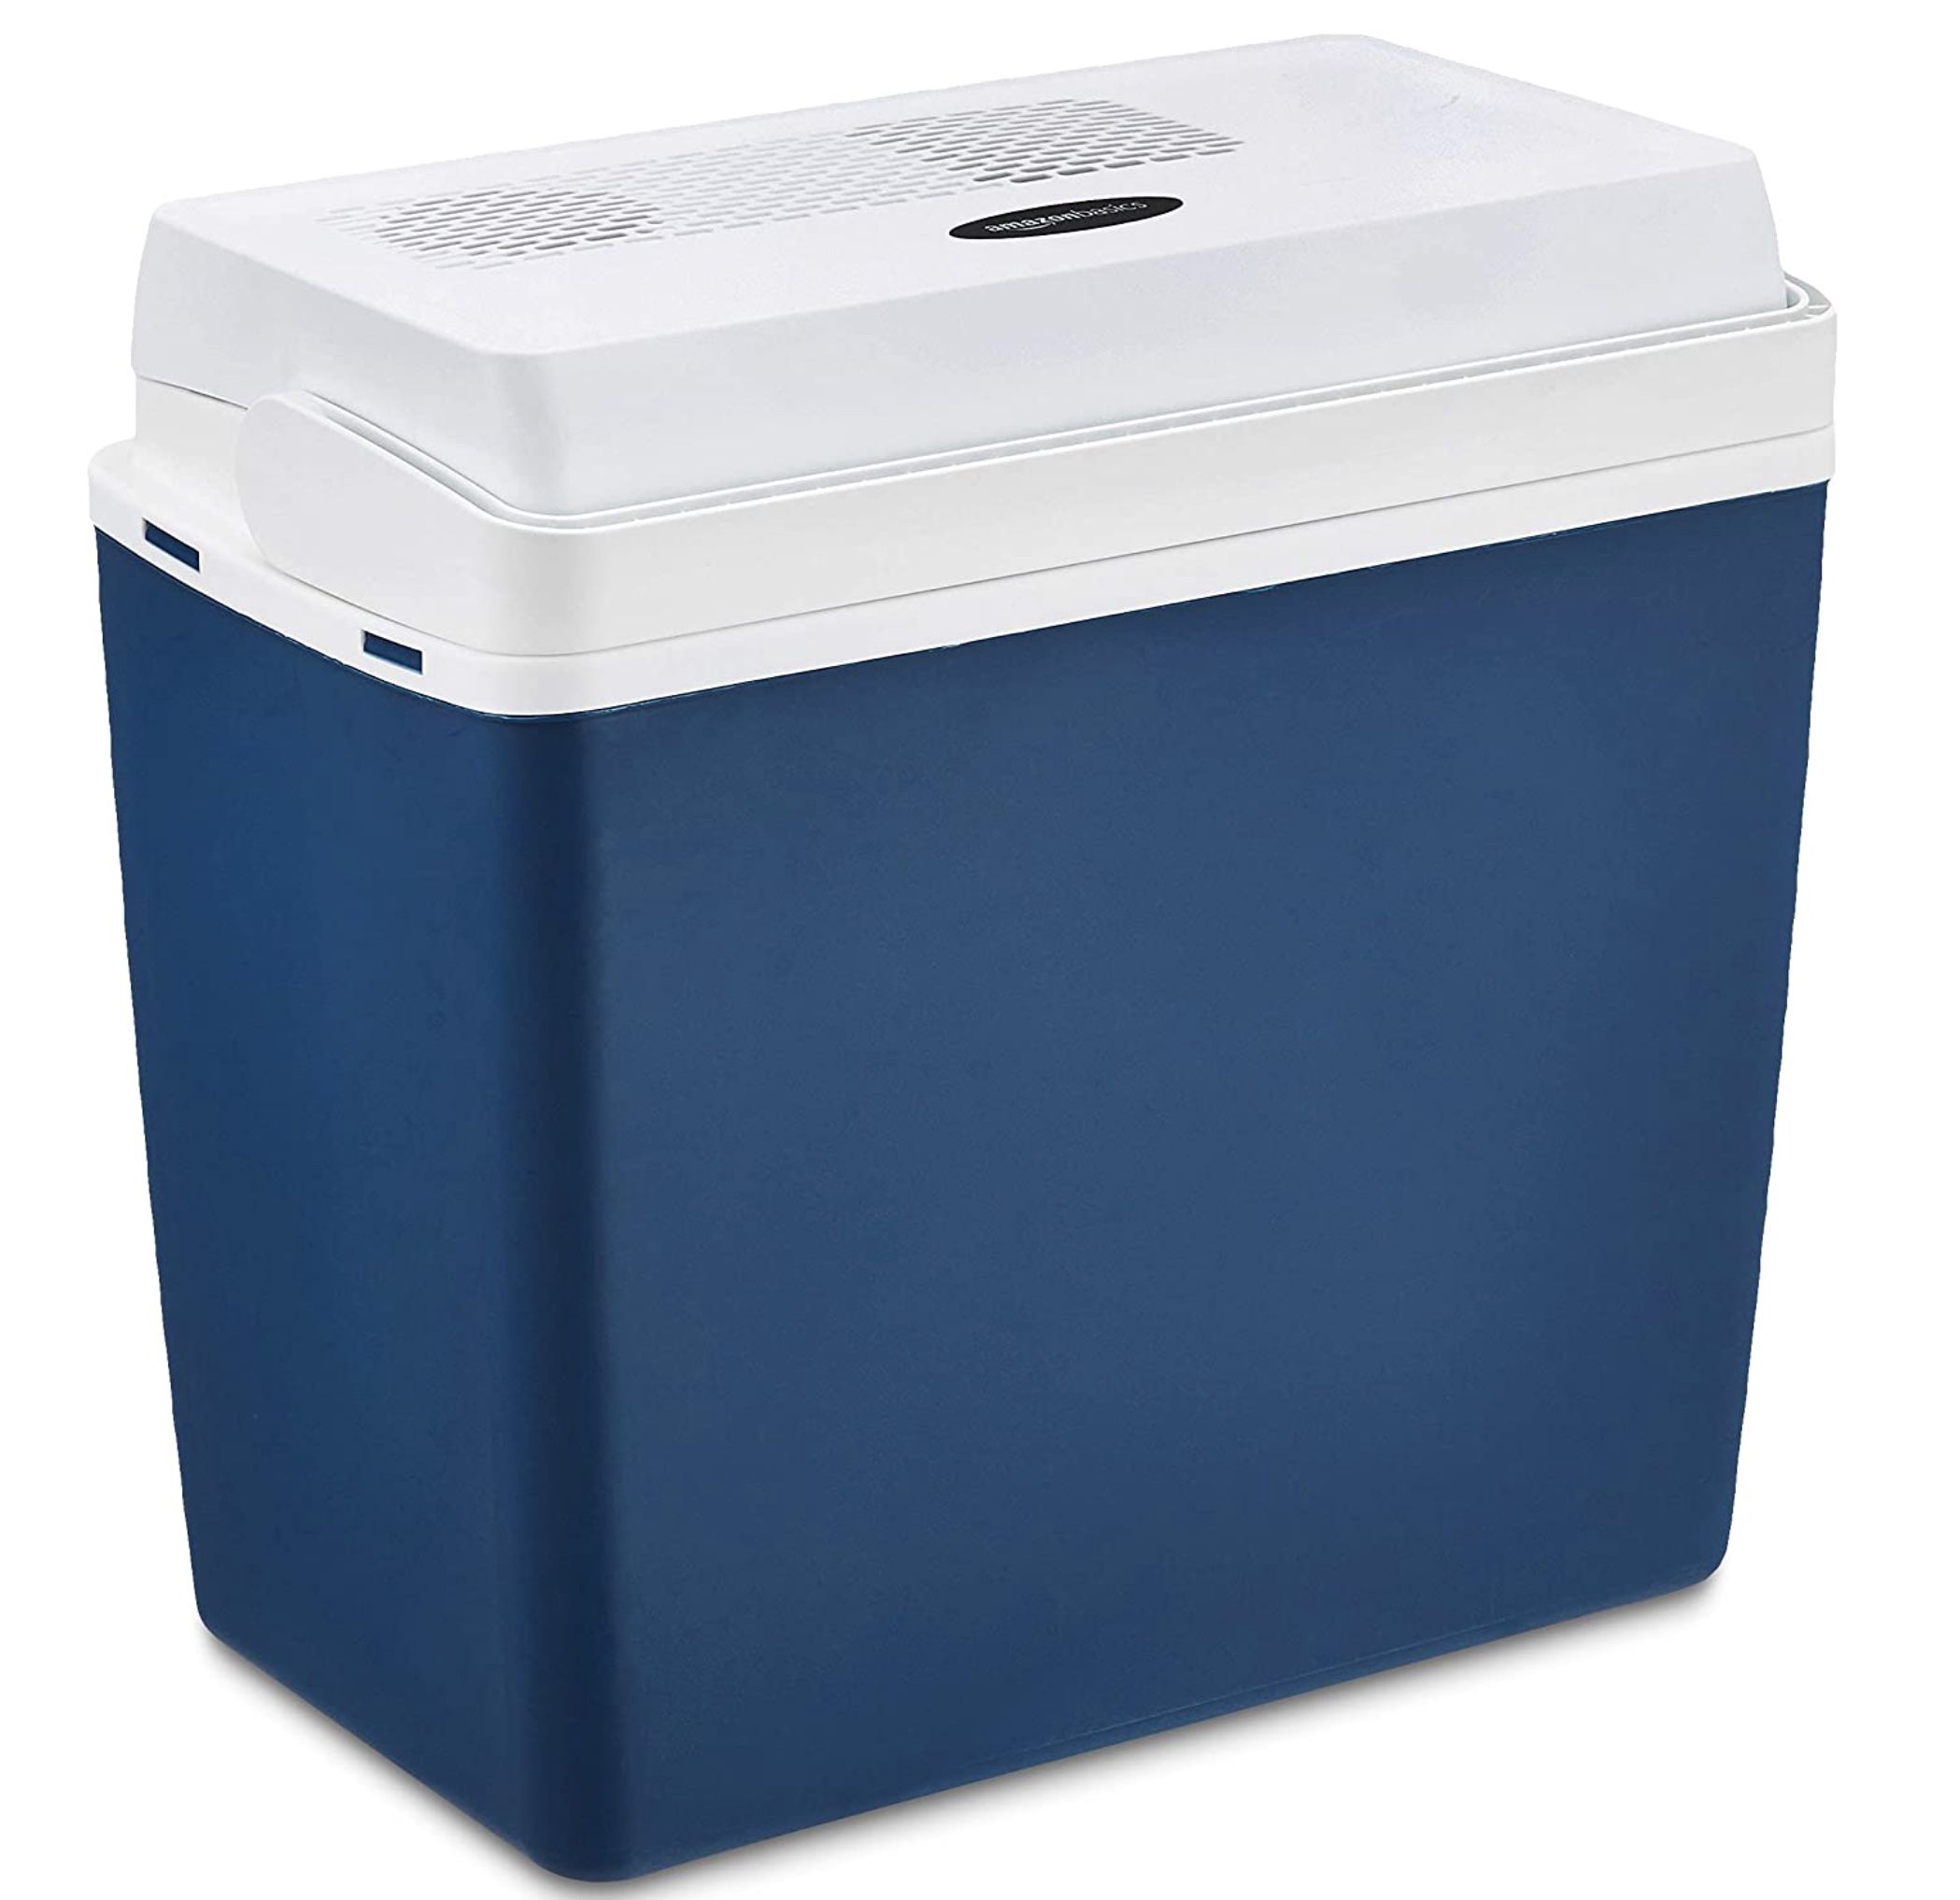 B Ware: Amazon Basics elektrische Kühlbox 21 Liter für 27,99€ (statt neu 50€)